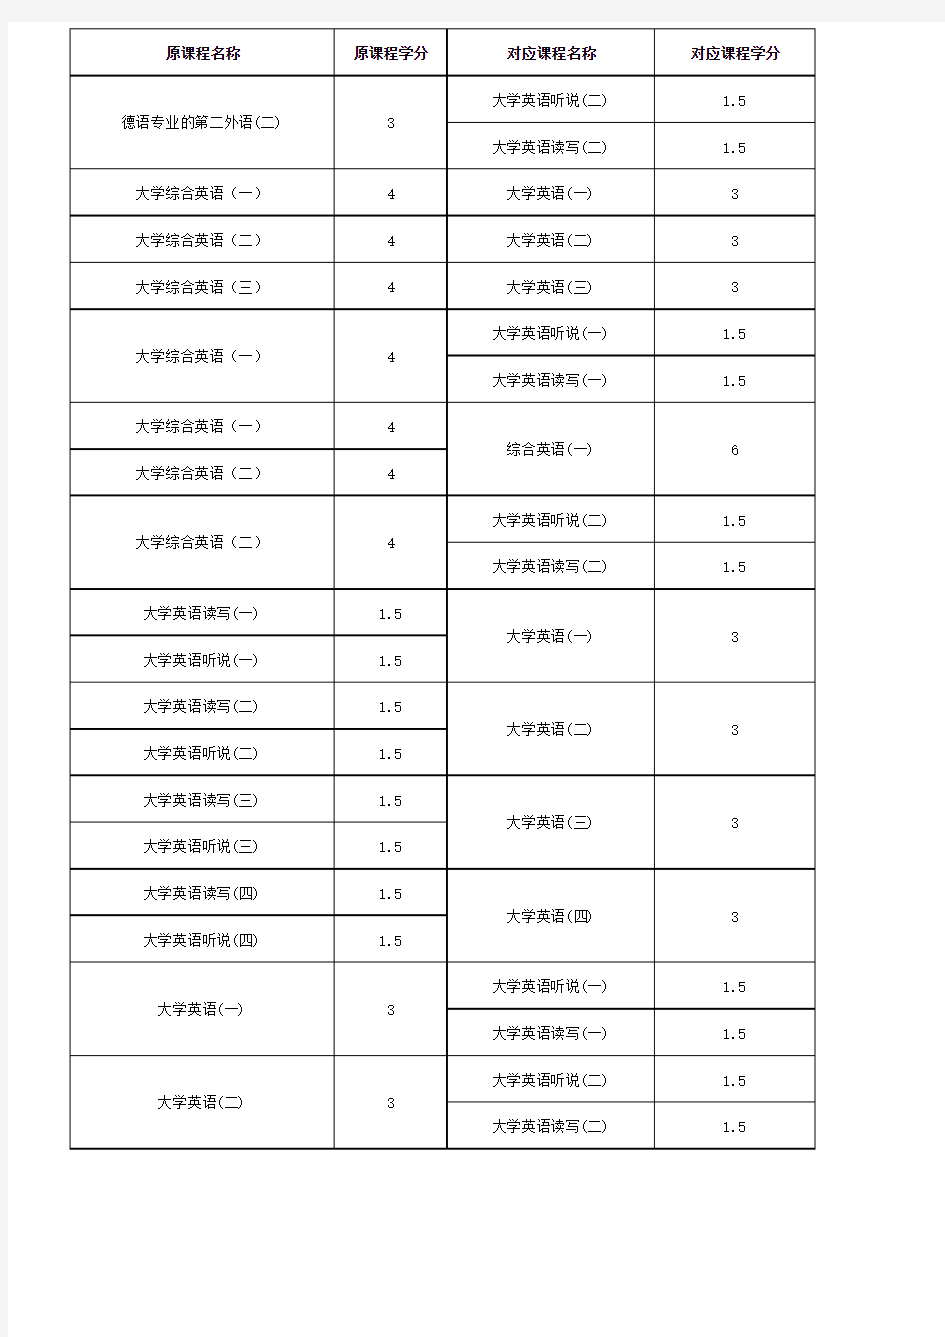 武汉科技大学本科生课程转换和学分认定对照表-Wuhan